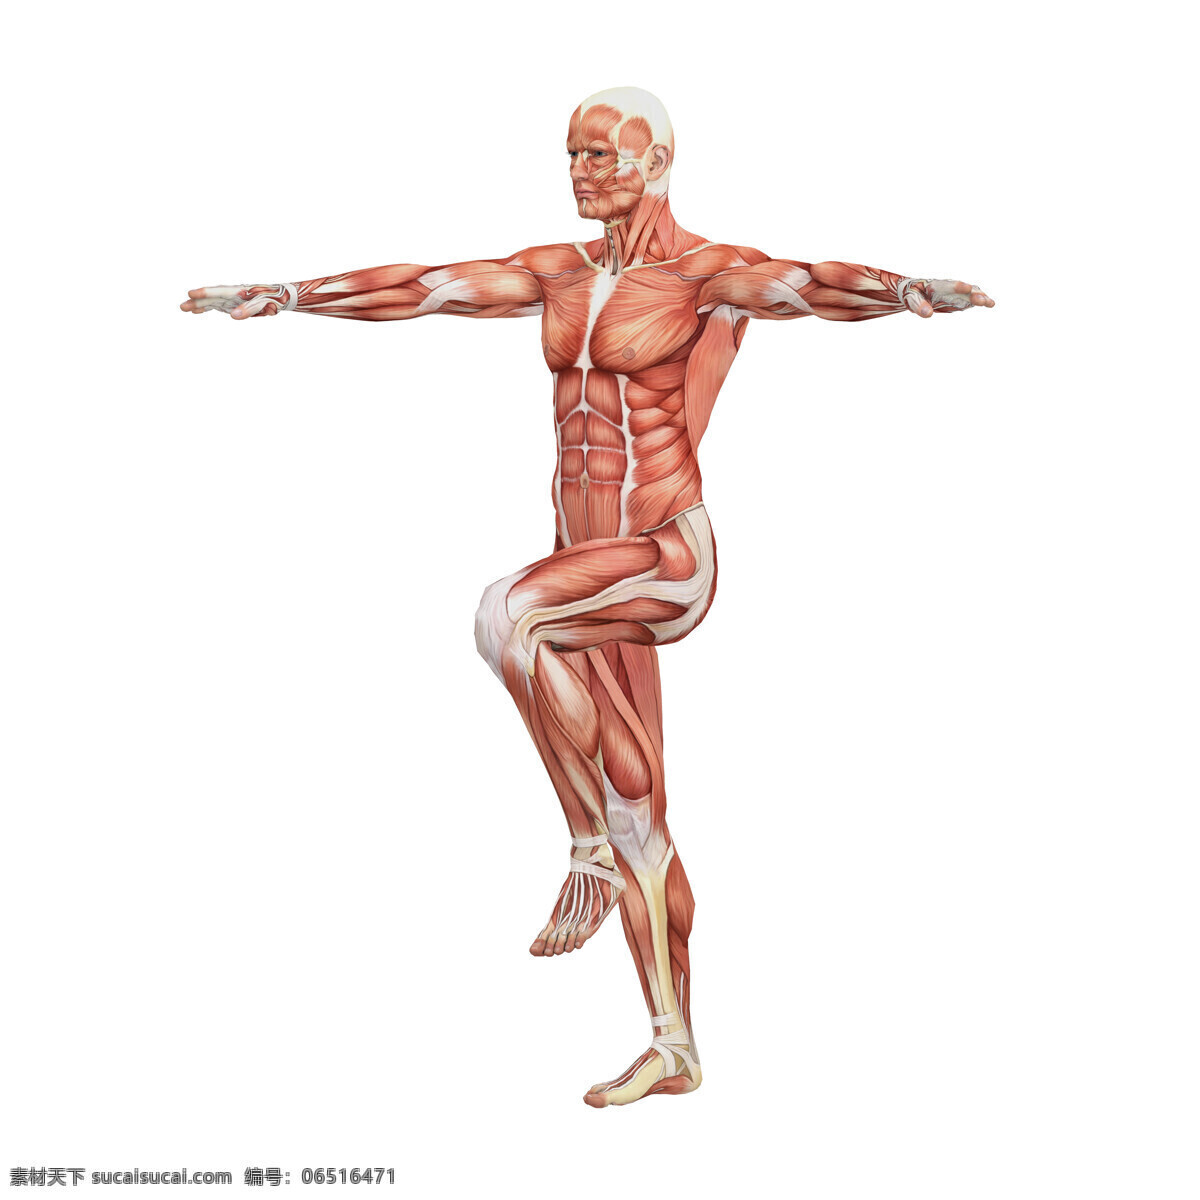 运动 男性 人体 肌肉 组织 人体解剖学 男性人体 肌肉组织图 医学 医疗护理 人体器官图 人物图片